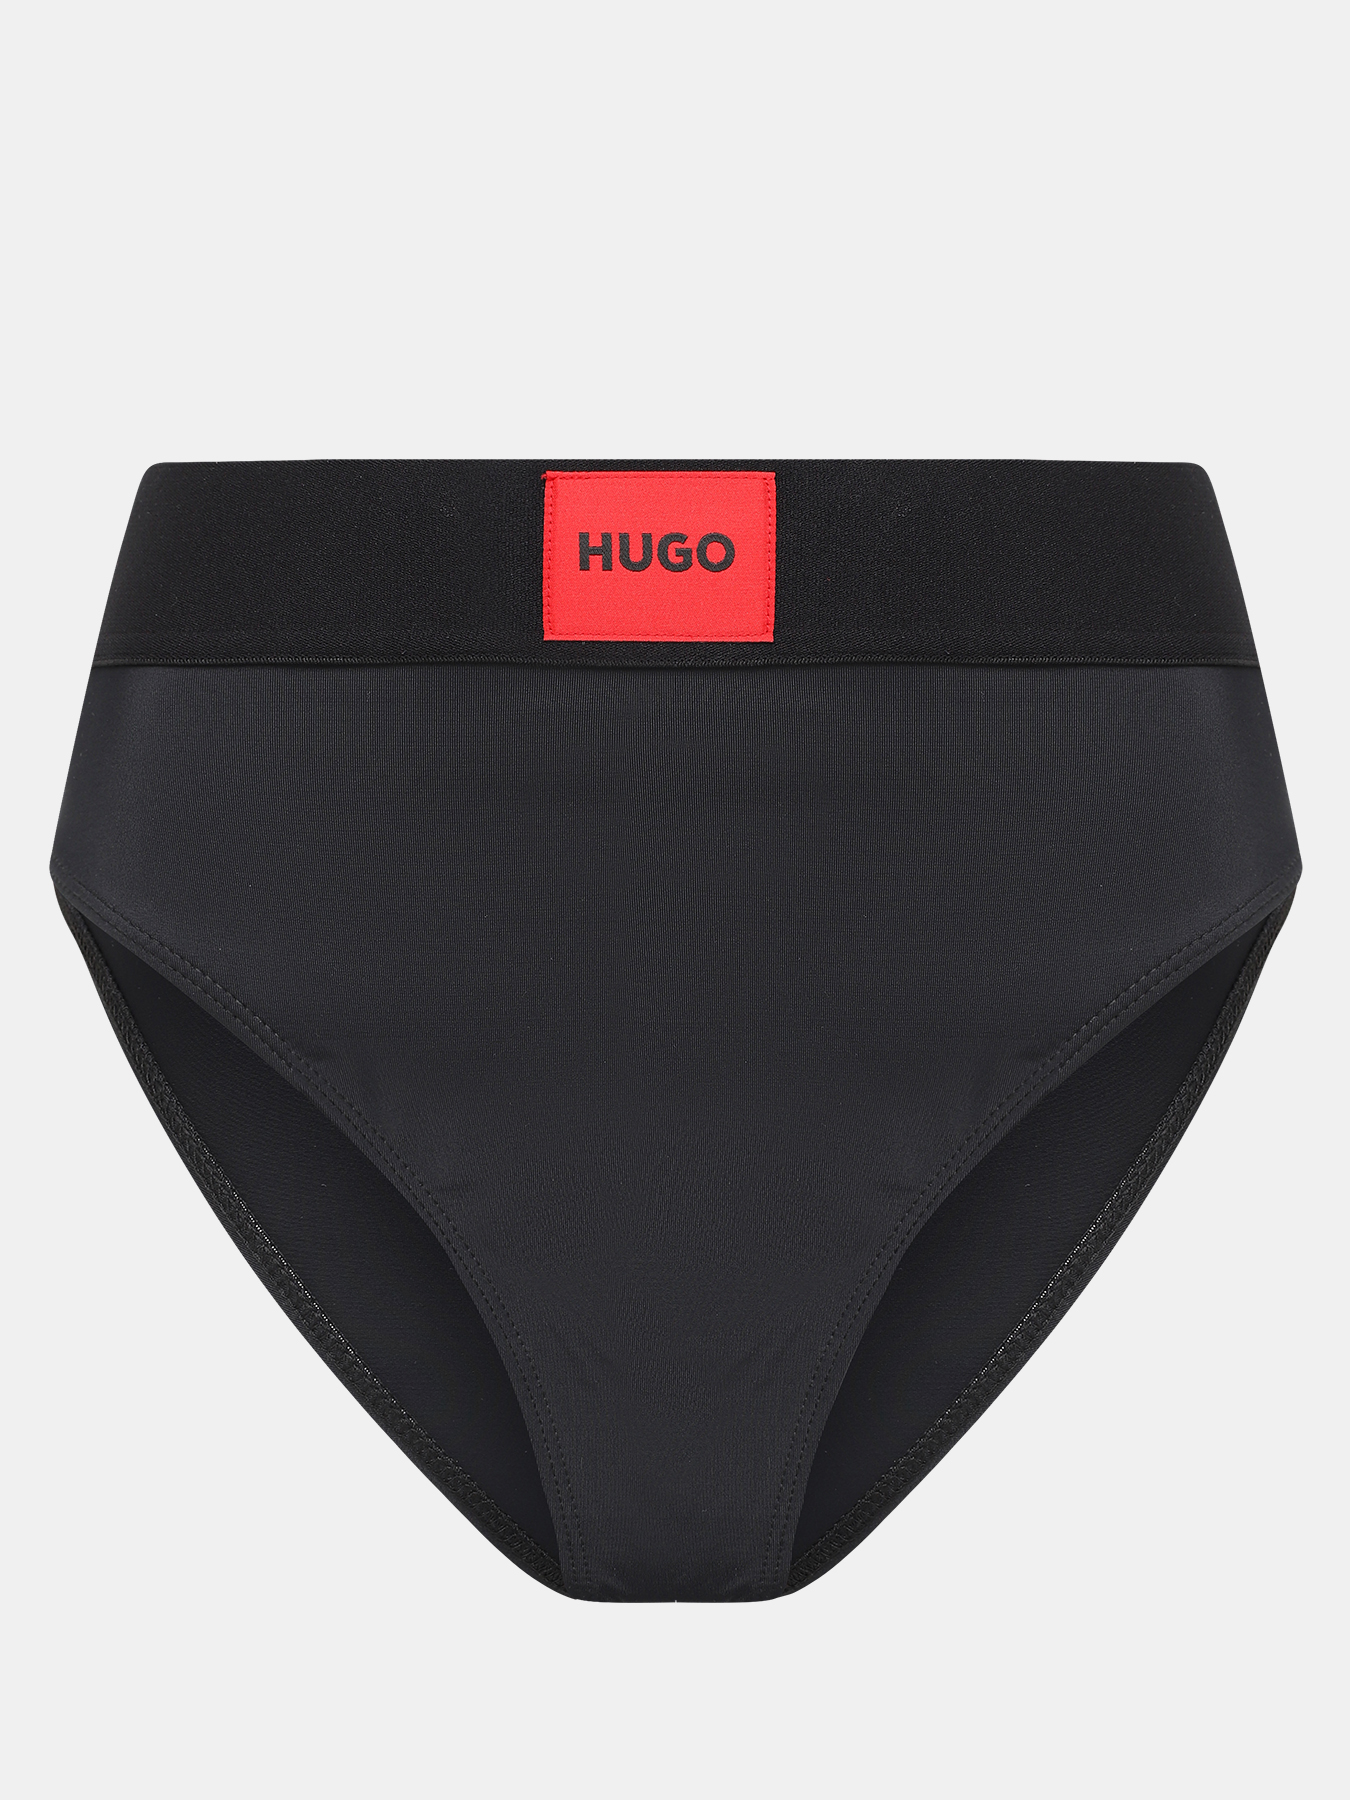 Плавки купальные High waist red label HUGO 418299-045, цвет черный, размер 48-50 - фото 1